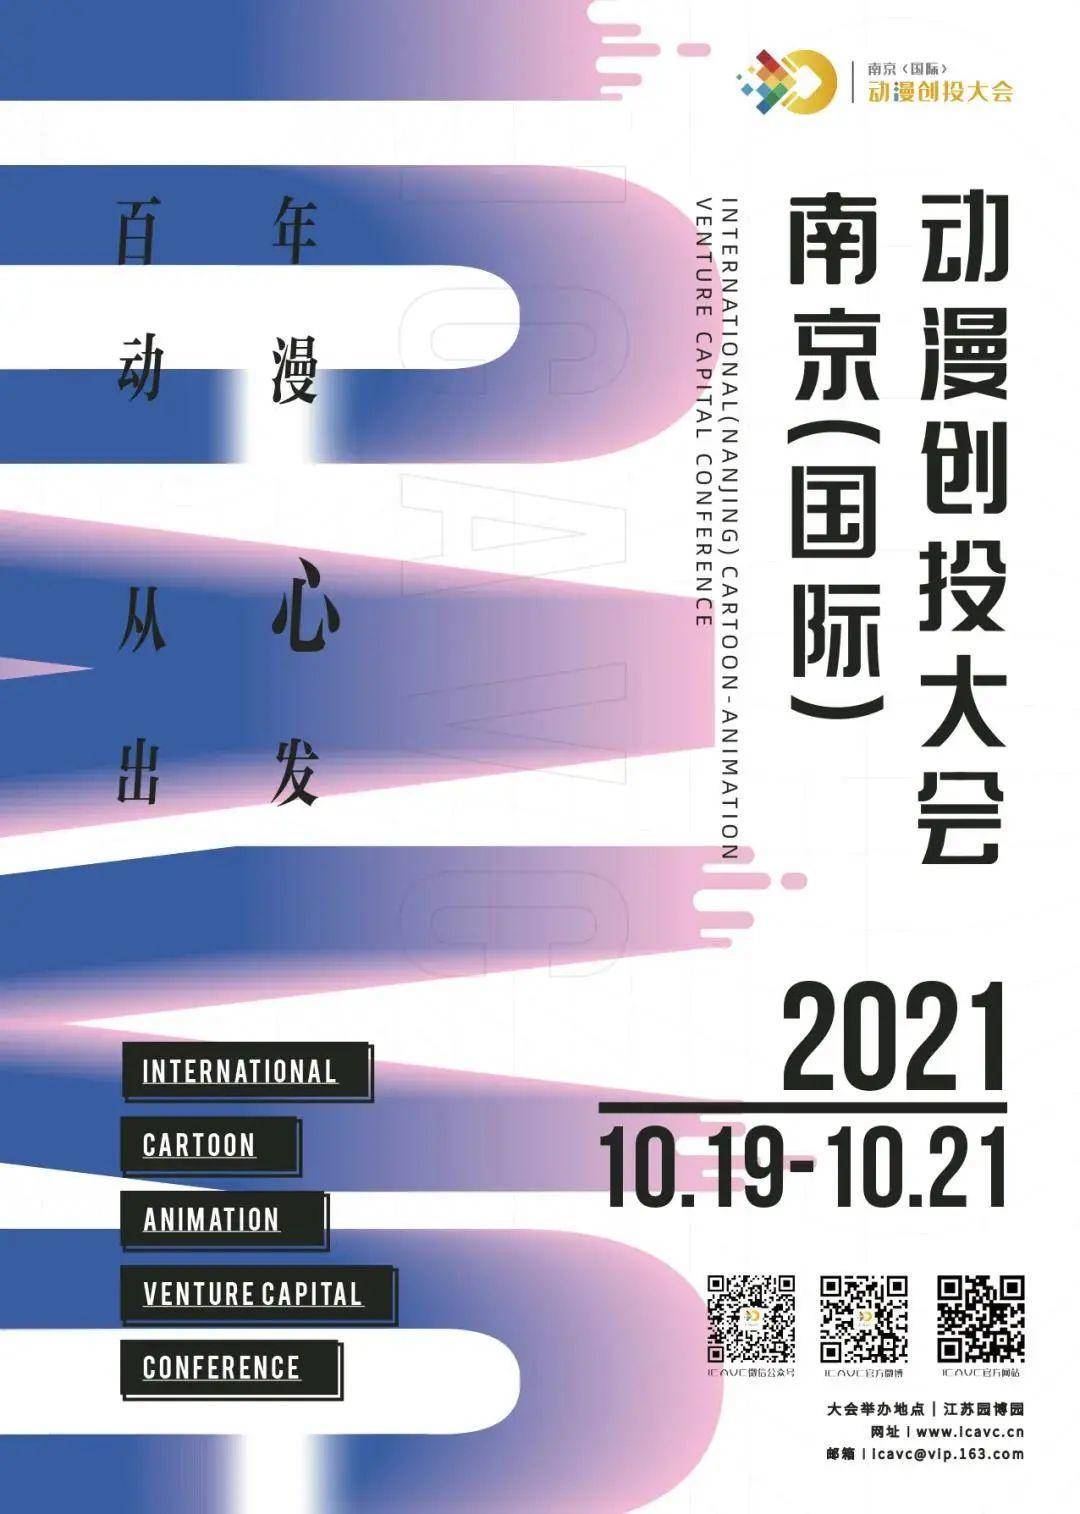 2021南京(國(guó)际)动漫创投大會(huì)闭幕 6个项目获百万扶持资金(图1)